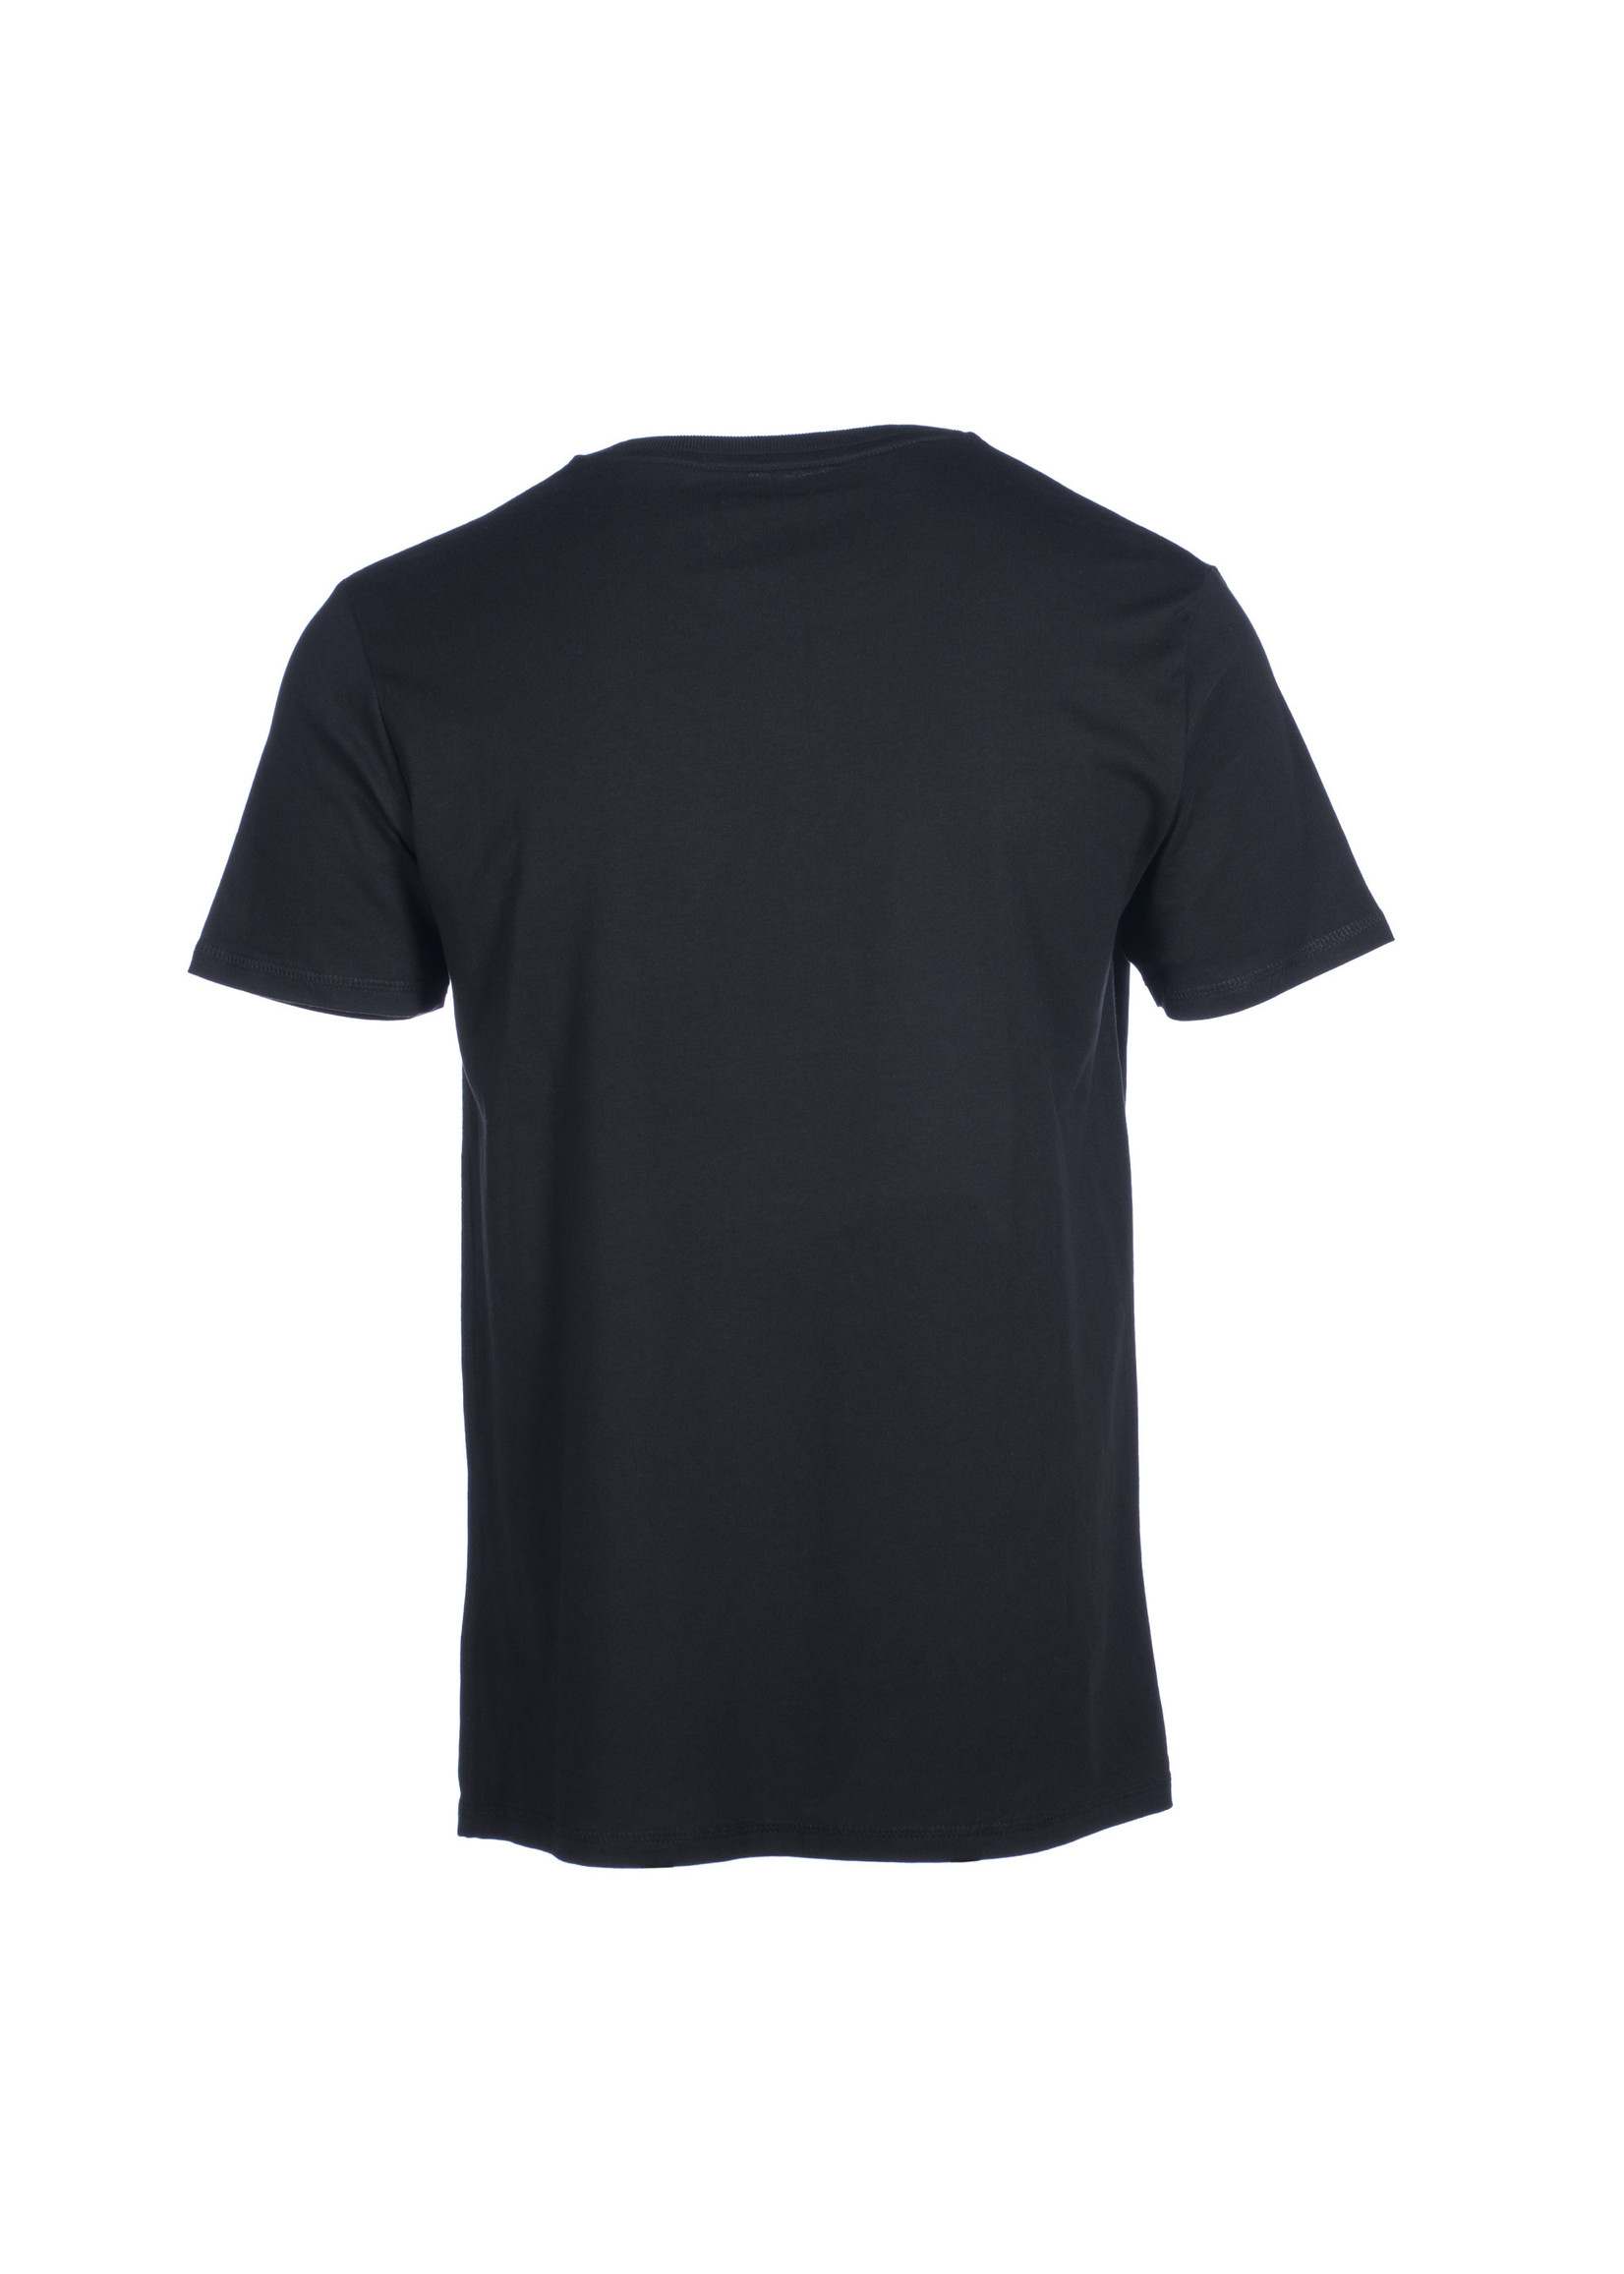 420 Original Clothing Farm T-Shirt 420 Vintage black